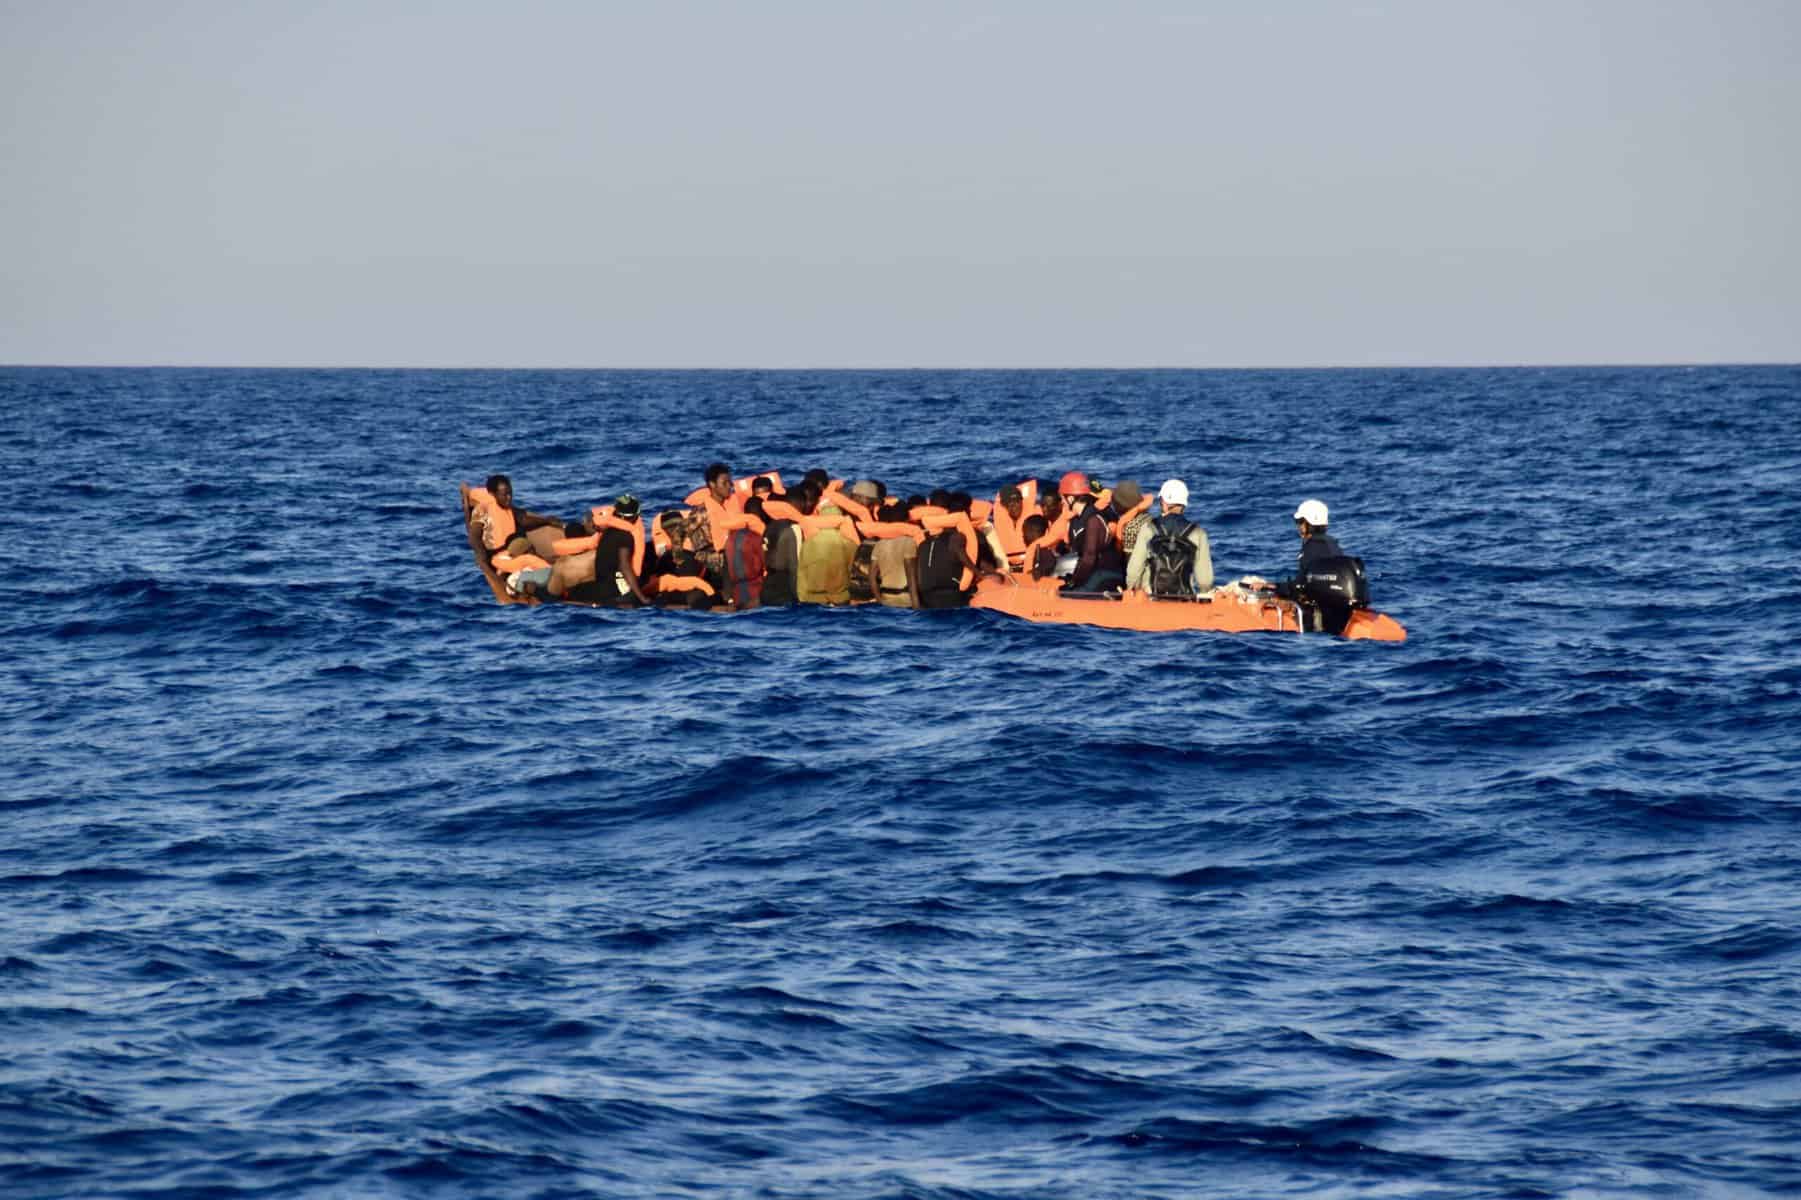 EKL_Tender-nähert-sich-Flüchtlingsboot